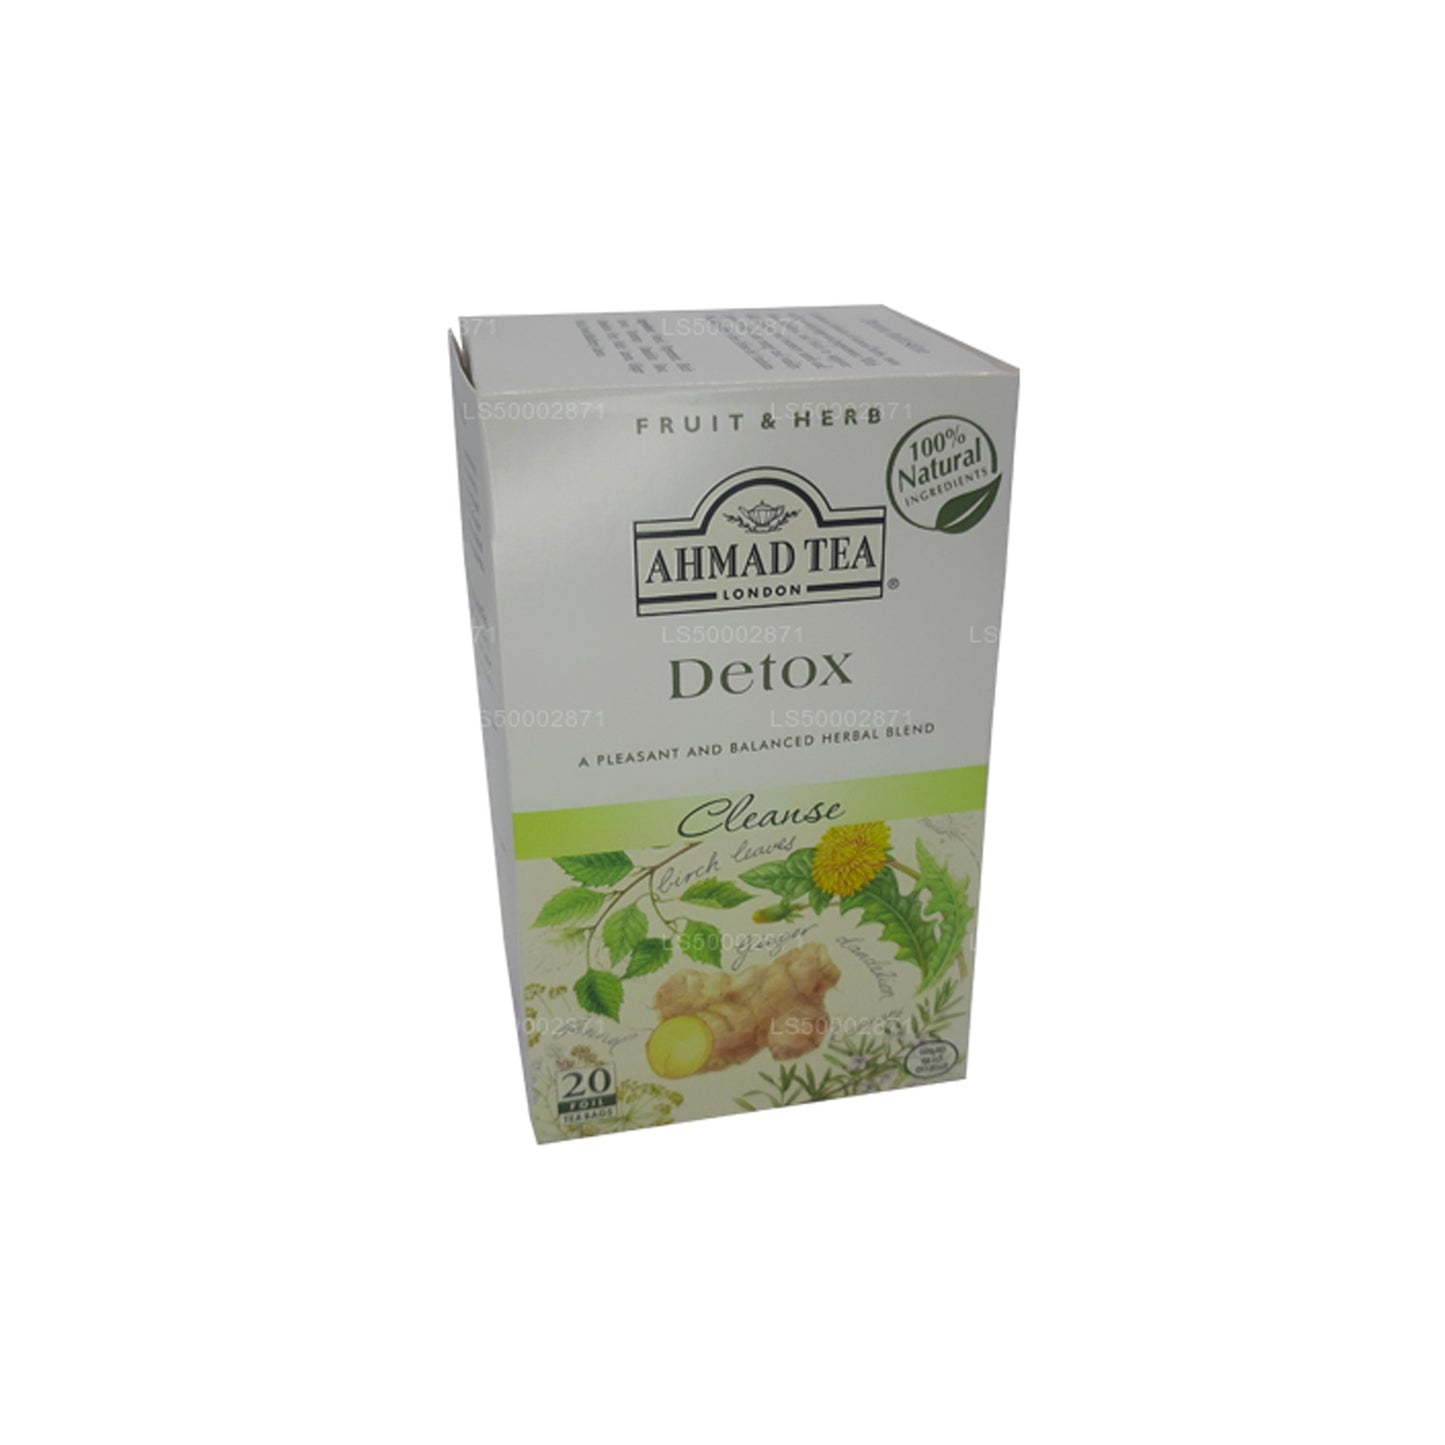 Ahmad Tea Detox Cleanse (20 theezakjes)